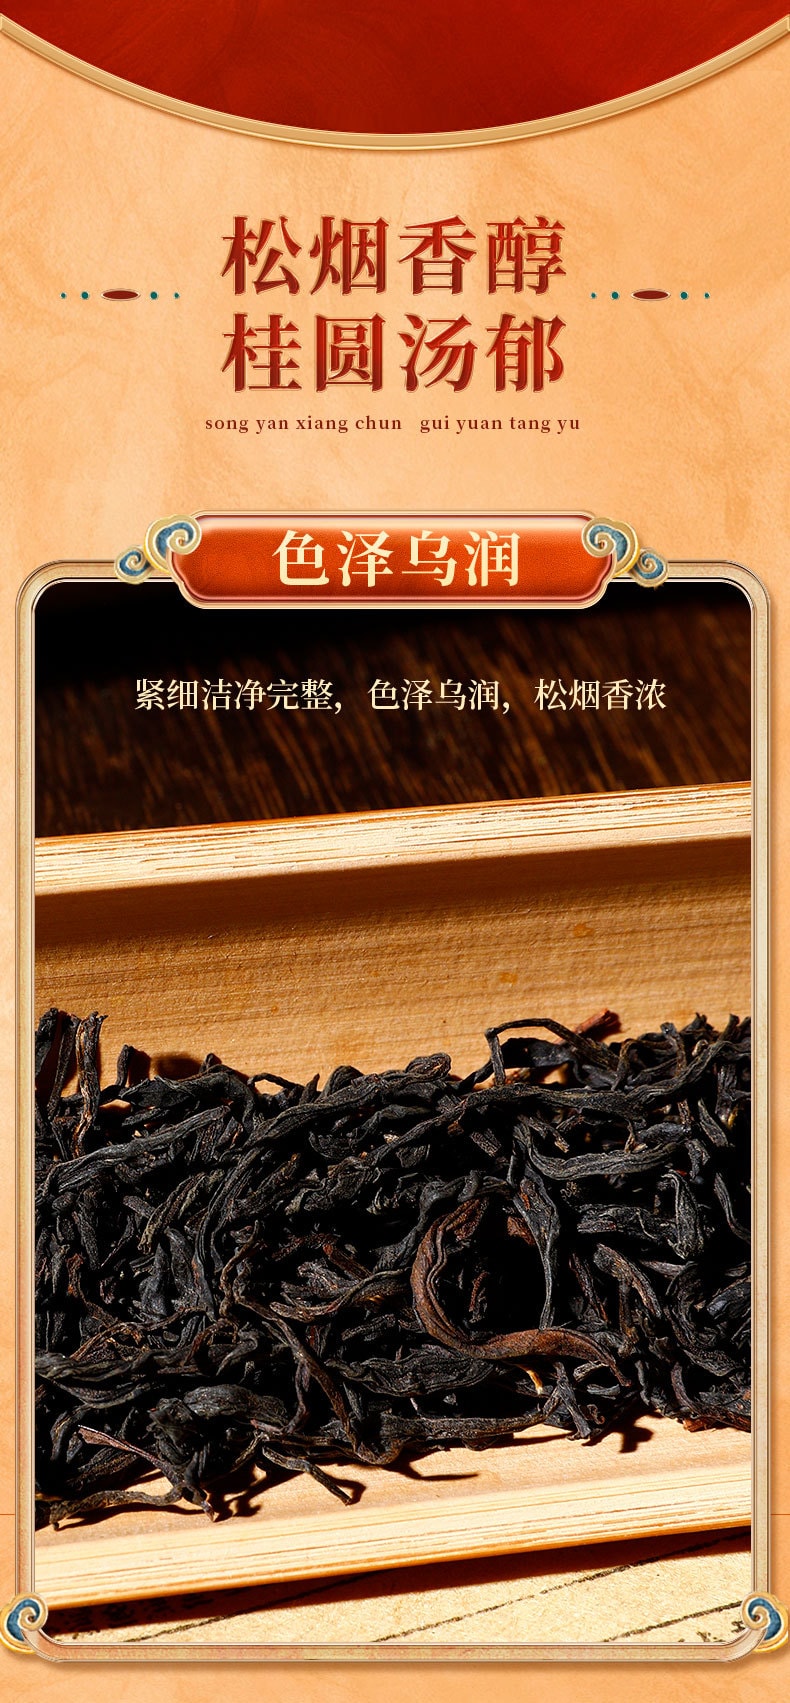 元正 茶票 松甘正山小种红茶 传统烟熏工艺 松烟香桂圆汤 武夷红茶茶叶 50g